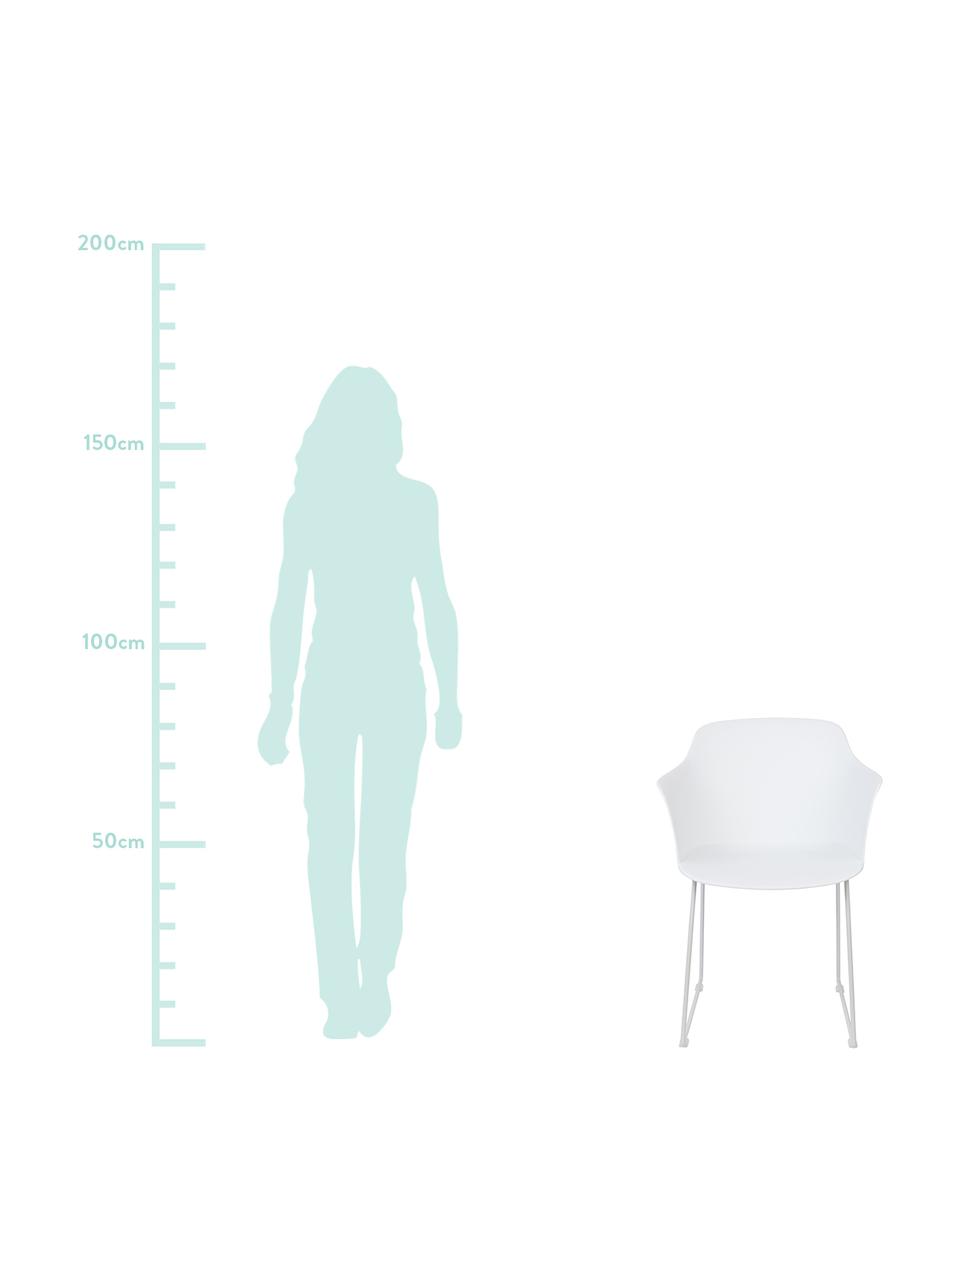 Kunststoff-Armlehnstühle Tango, 2 Stück, Sitzschale: Polypropylen, Beine: Metall, pulverbeschichtet, Weiß, B 58 x T 54 cm